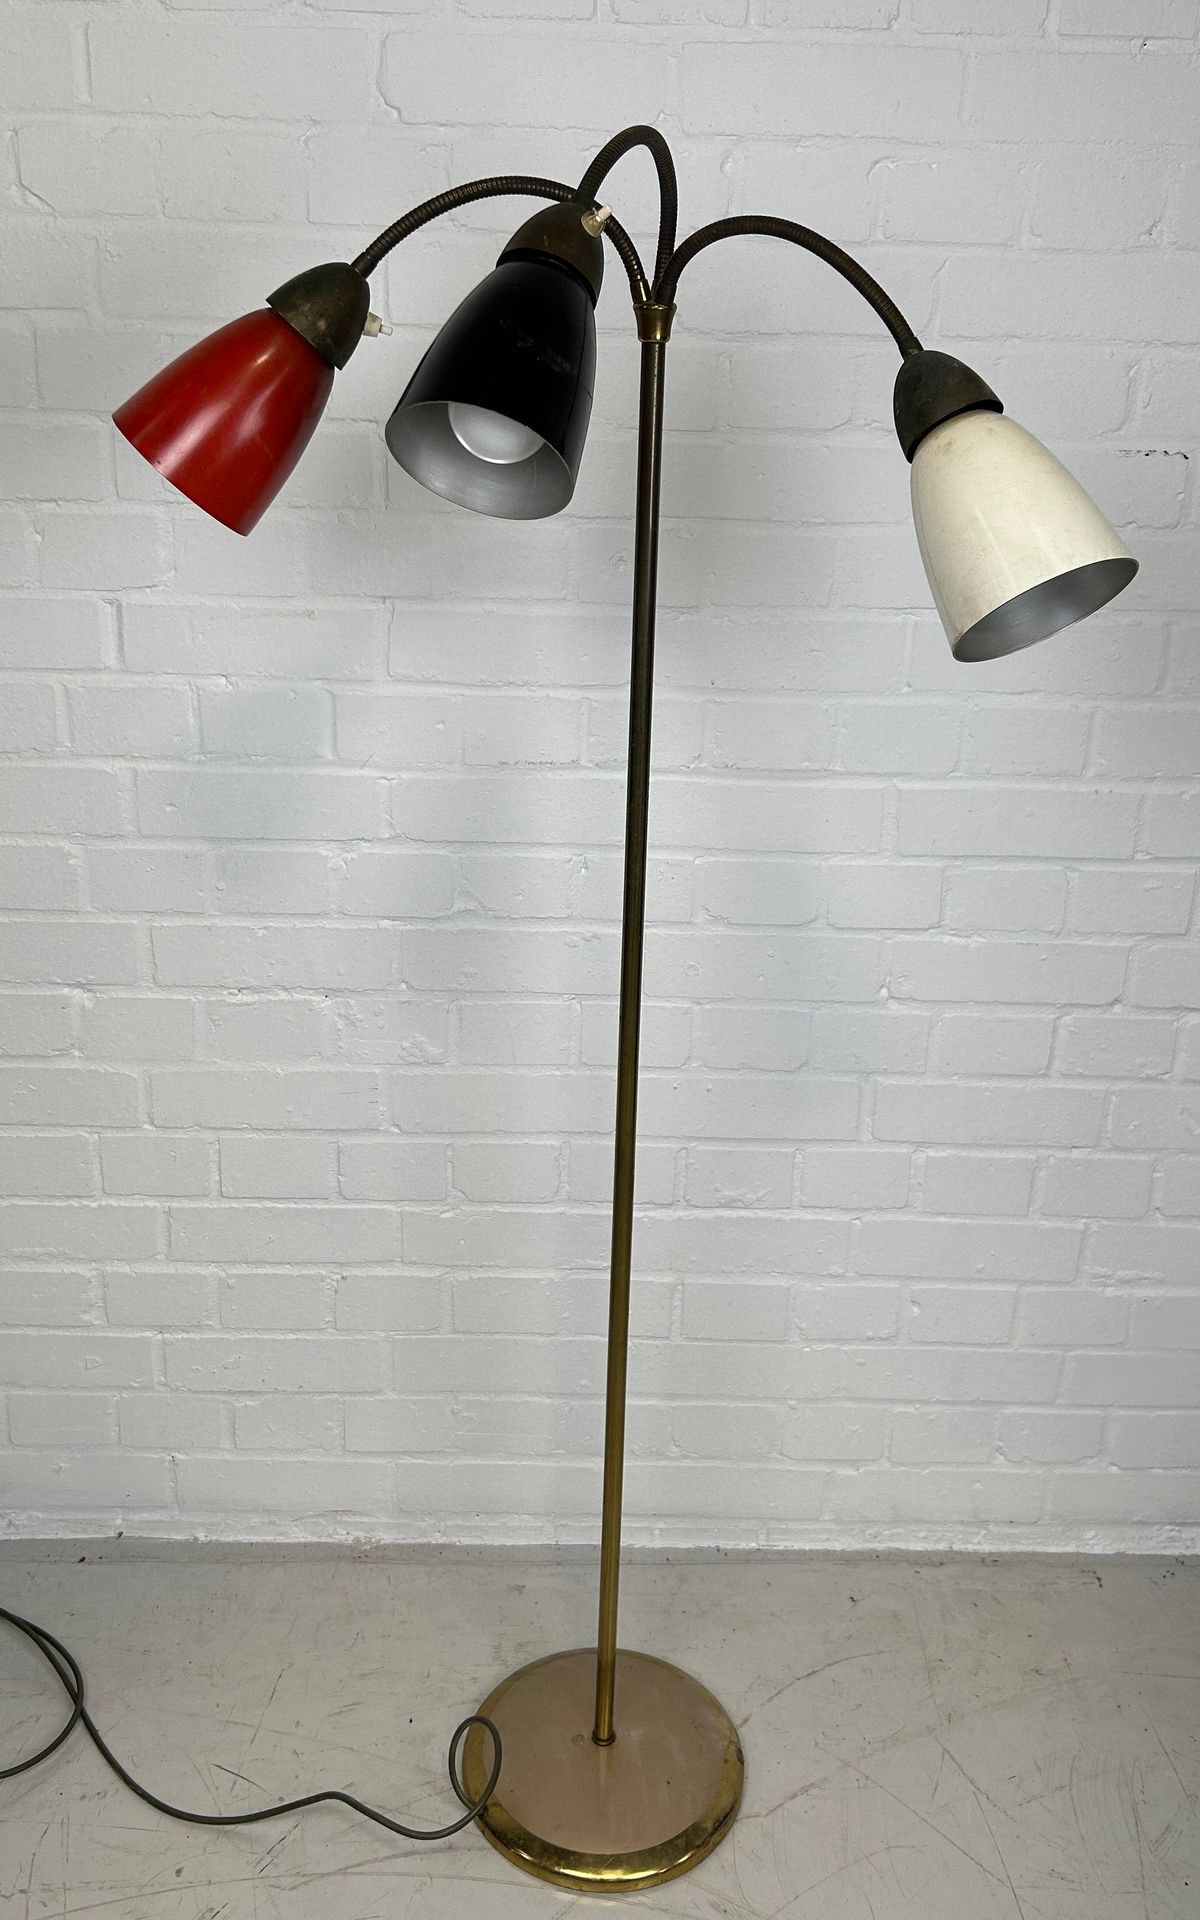 Null 中世纪设计的标准灯，有三盏灯和彩色金属灯罩、 

135 厘米高